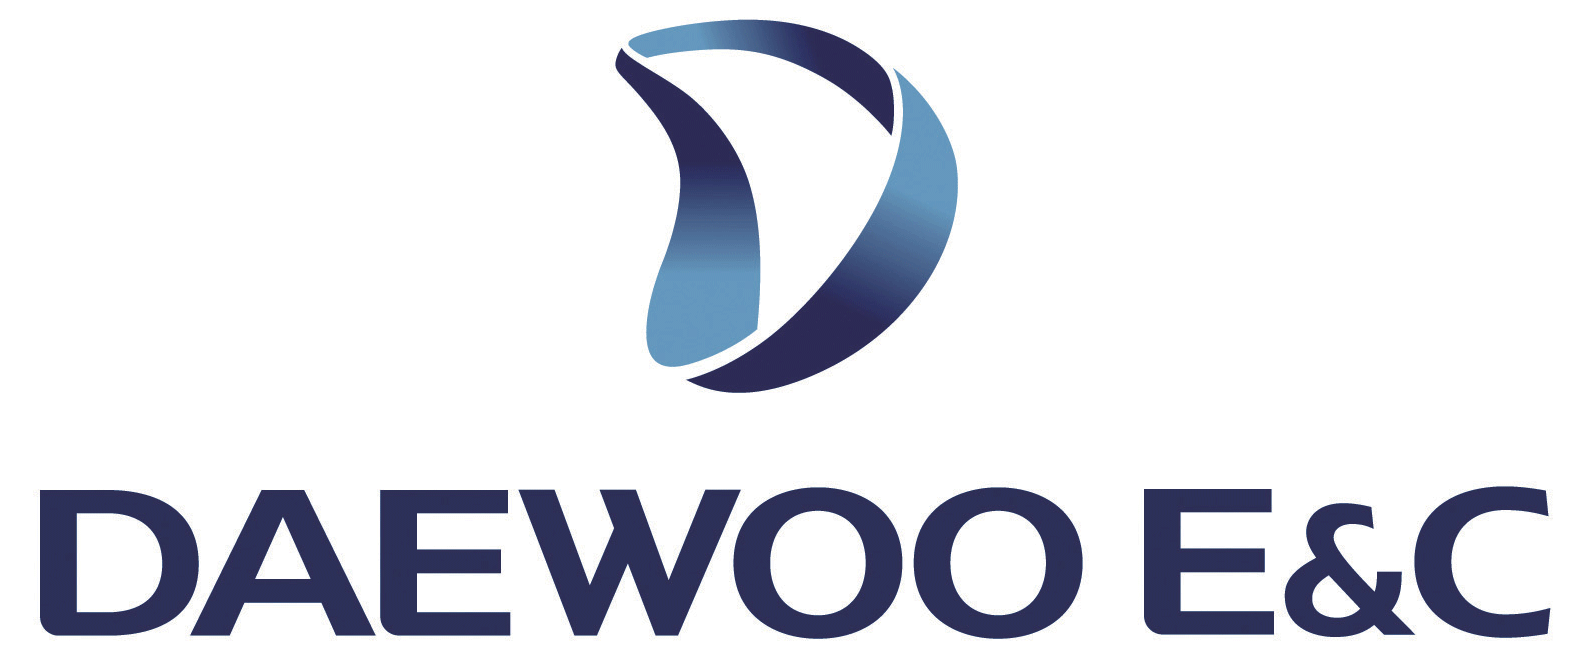 Daewoo E&c Logo Engineering Logos - Daewoo E&c Clipart (1920x1322), Png Download